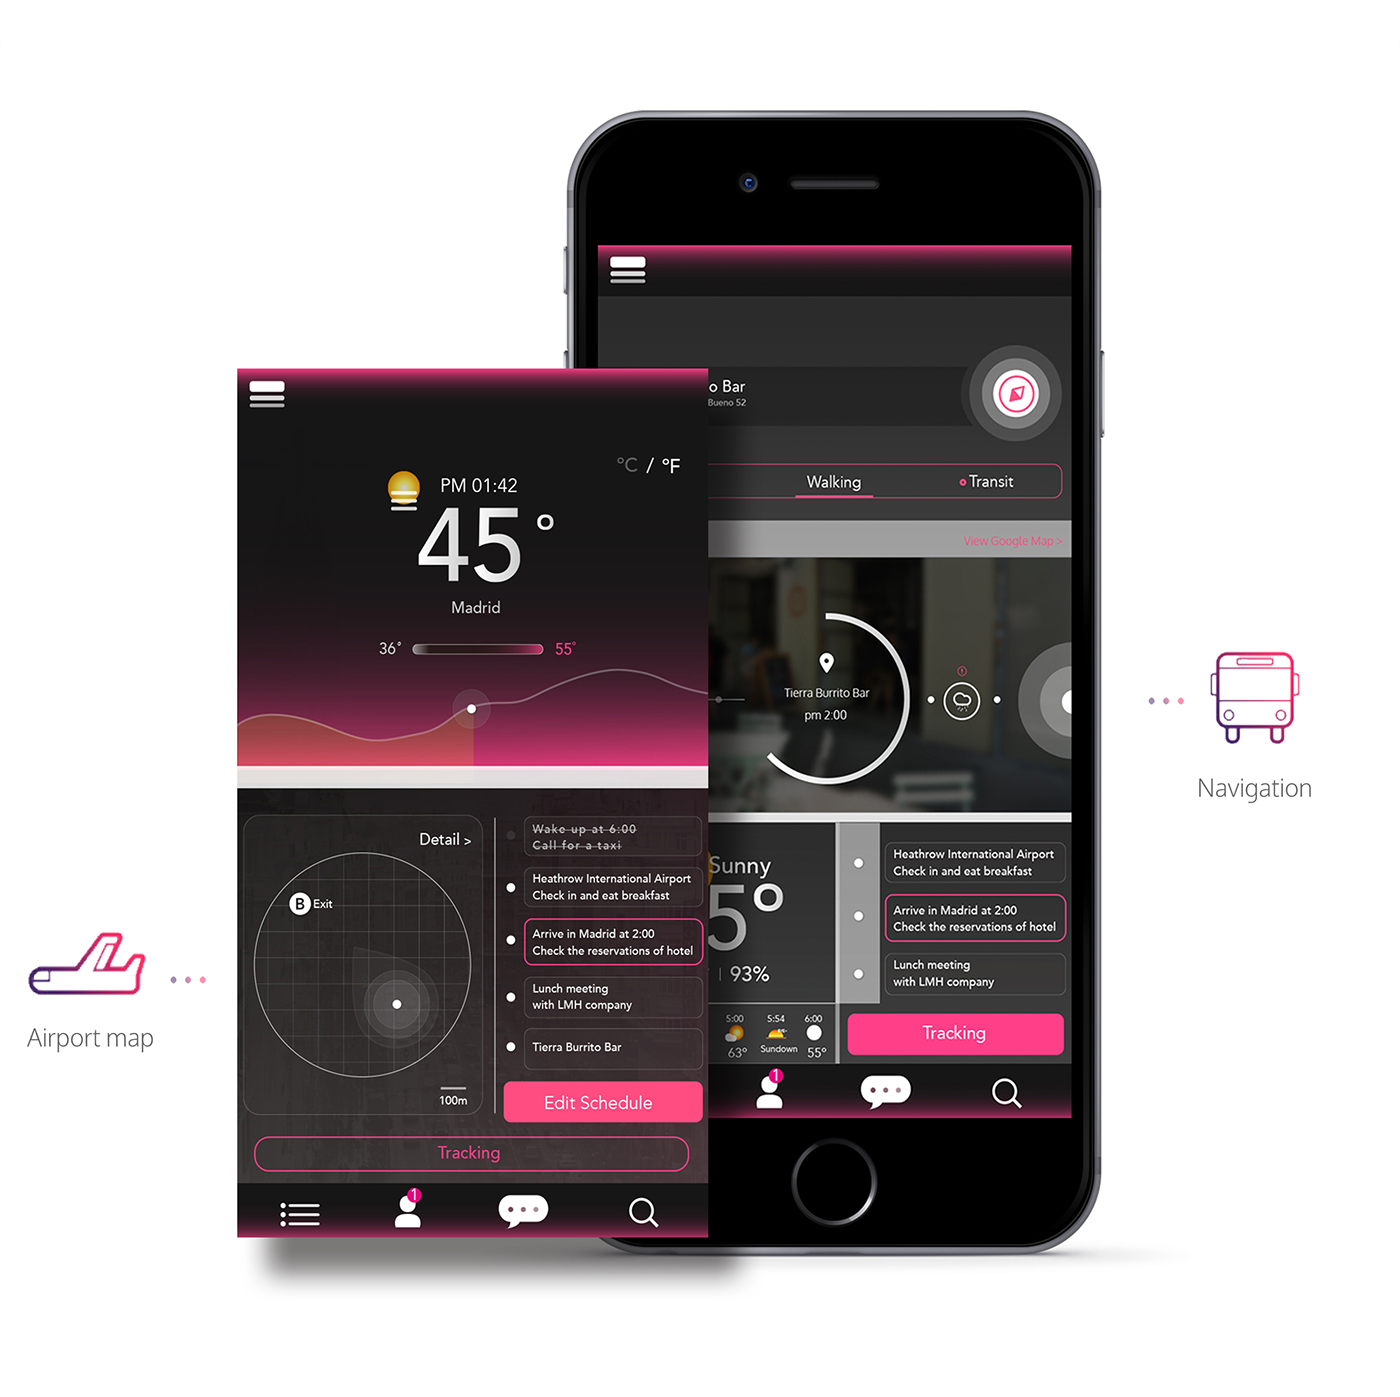 Adobe Portfolio app schedule app weather map ux UI graphicdesign Appdesign logo spain